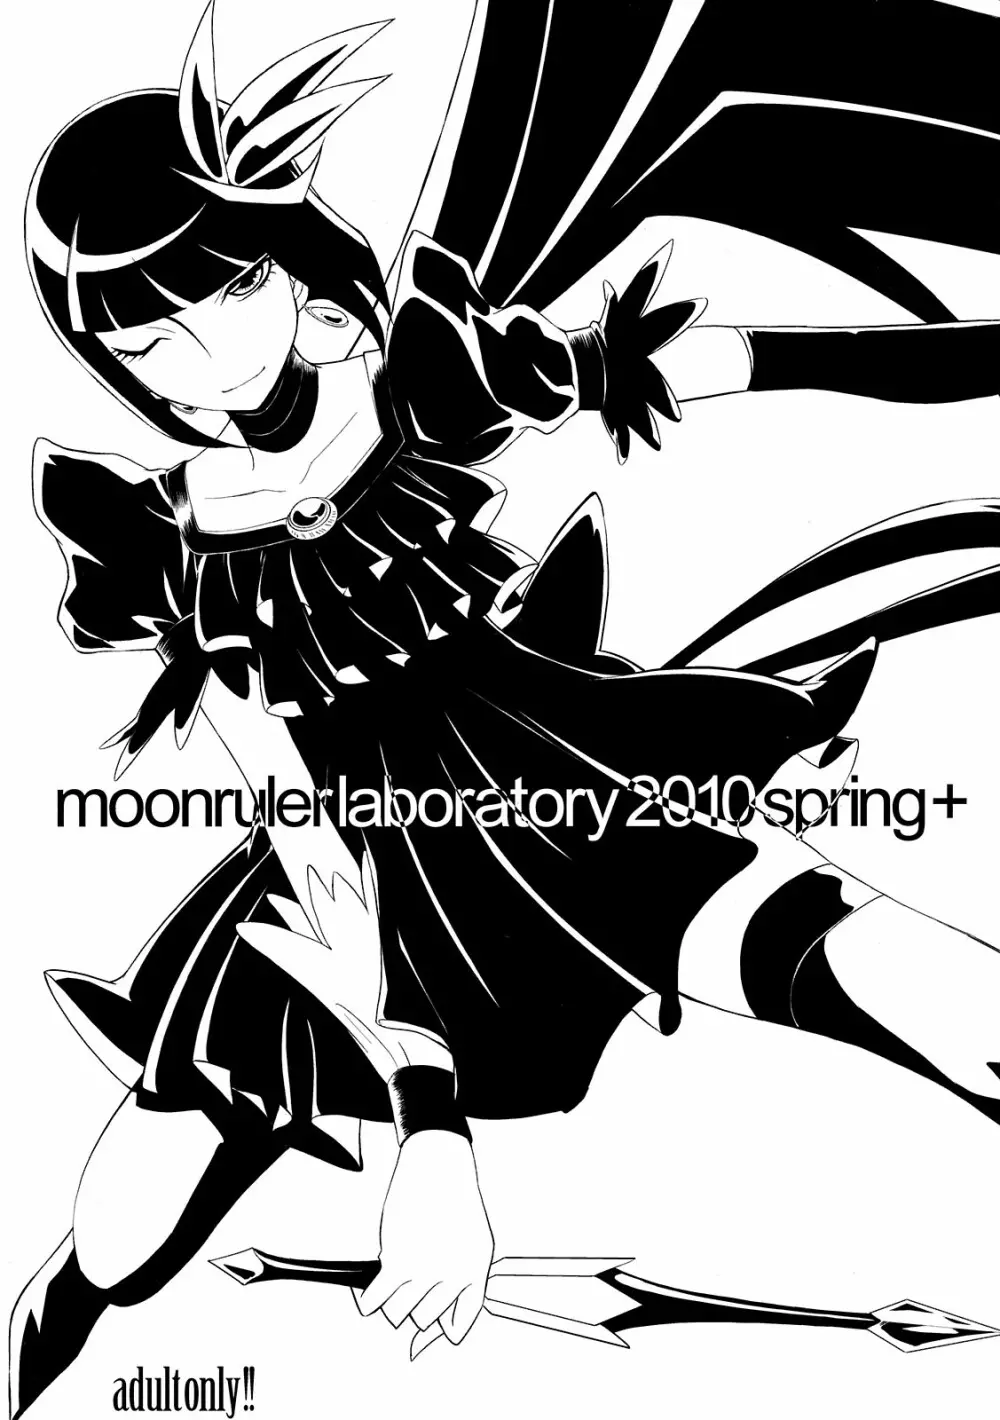 moonrulerlaboratory 2010 spring+ - page1